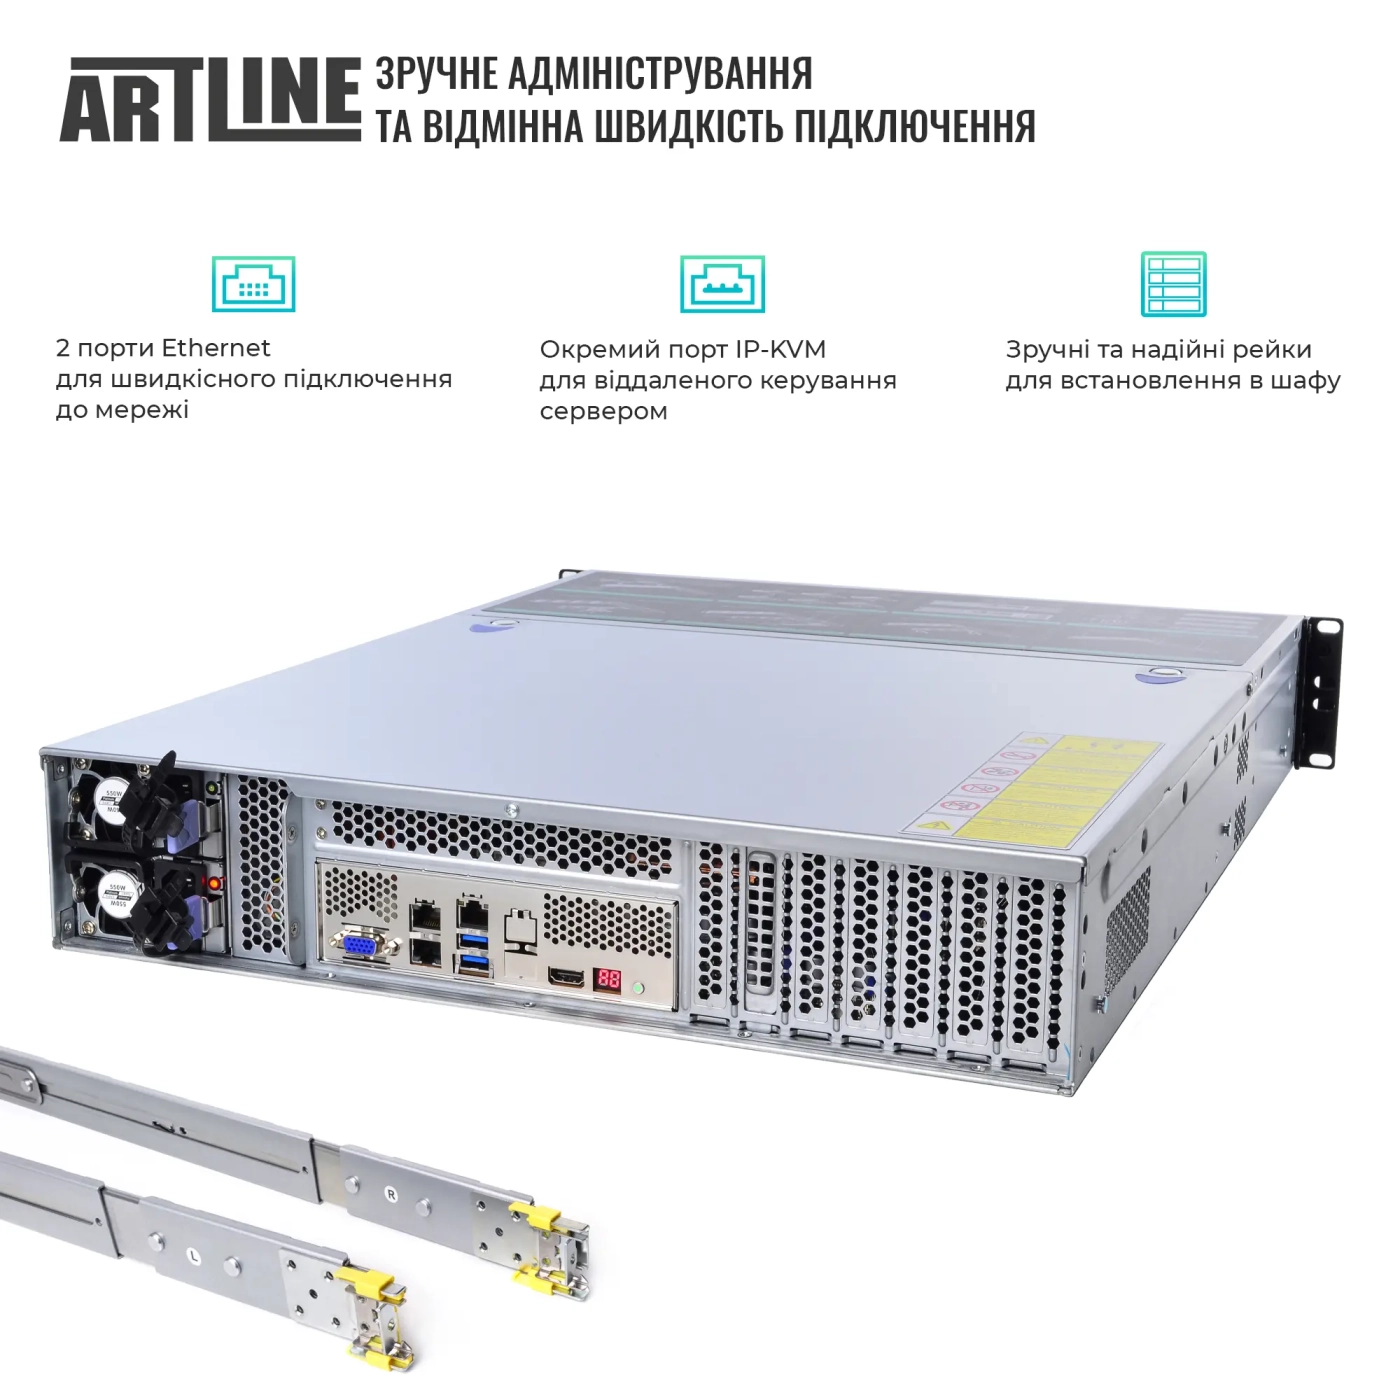 Купить Сервер ARTLINE Business R81 (R81v15) - фото 2